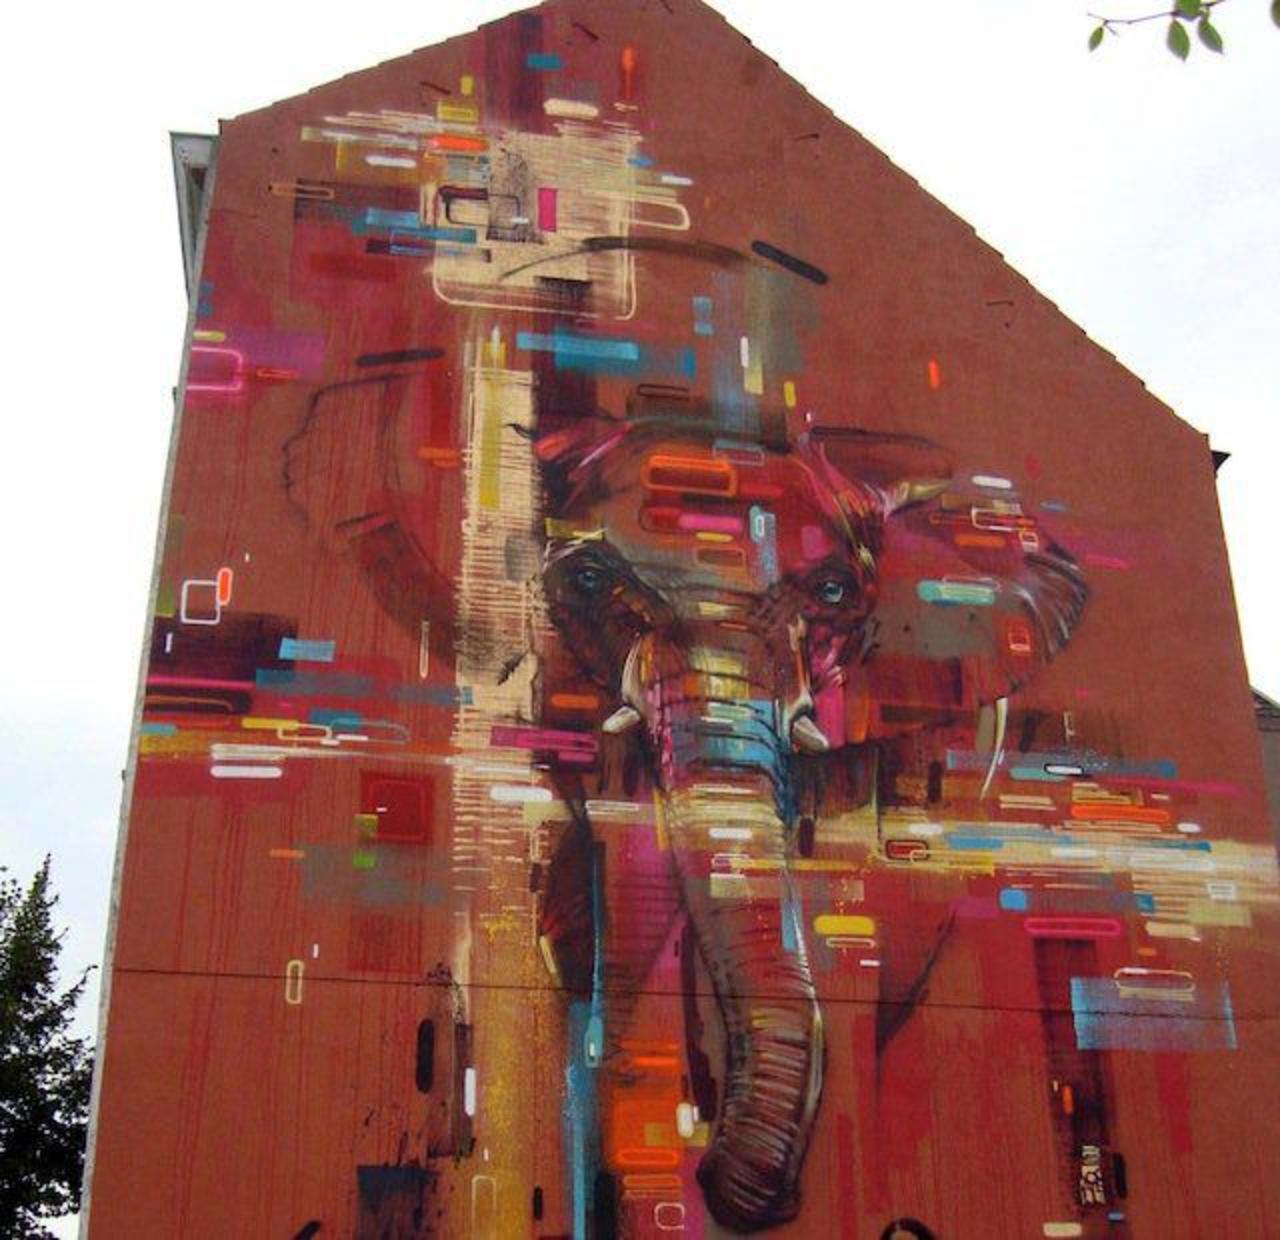 RT @hypatia373: #art #streetart #graffiti http://t.co/o8CJtPK77V